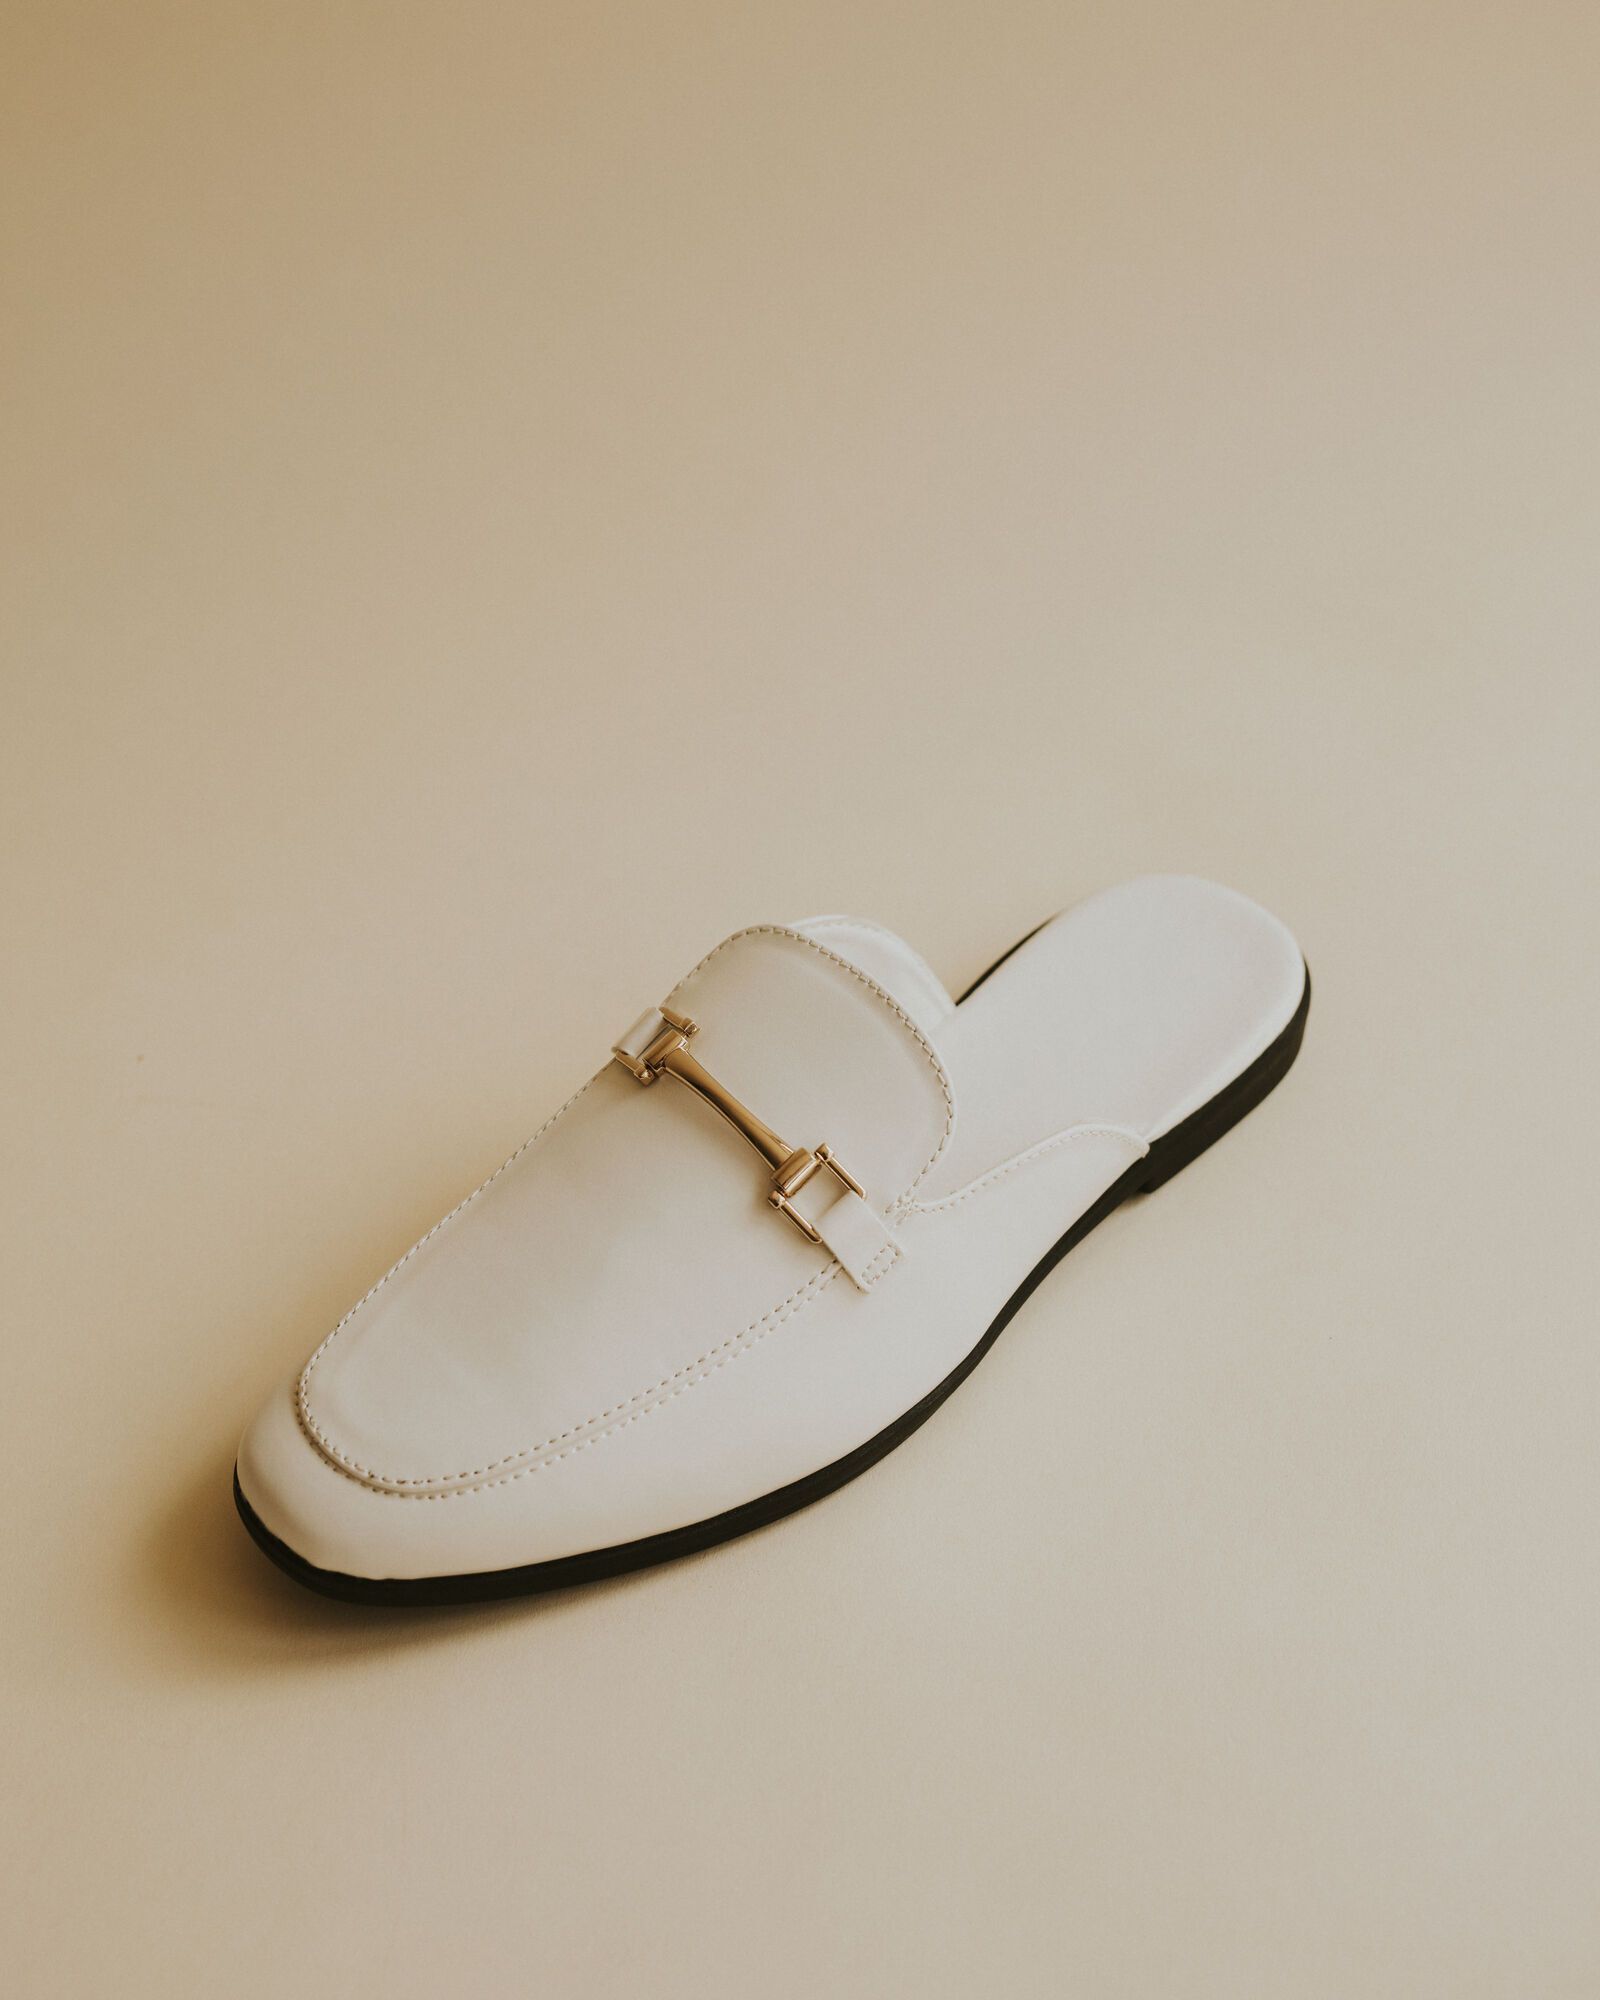 Дарит легкость и выглядит элегантно: три лучших варианта обуви на лето, которые легко заменят сандалии. Фото